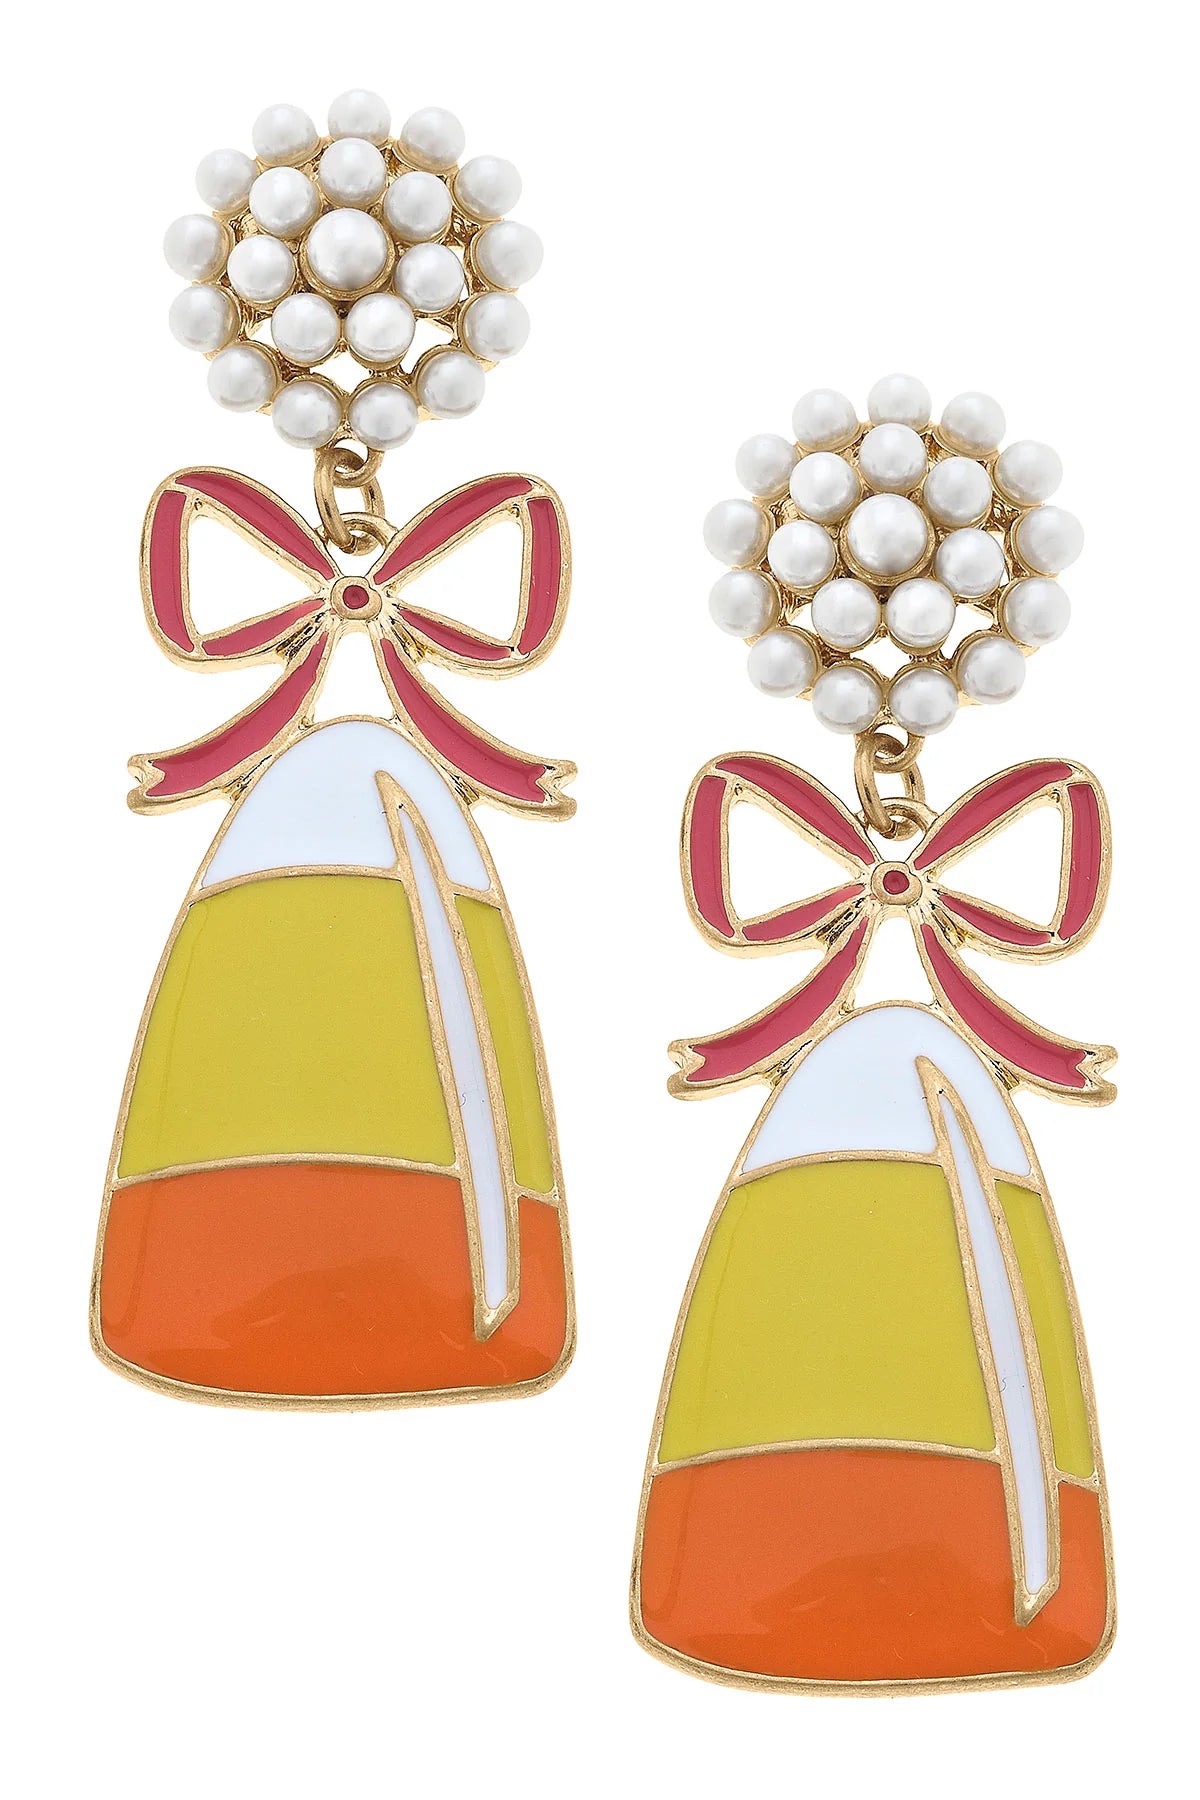 Pearl Candy Corn Earrings